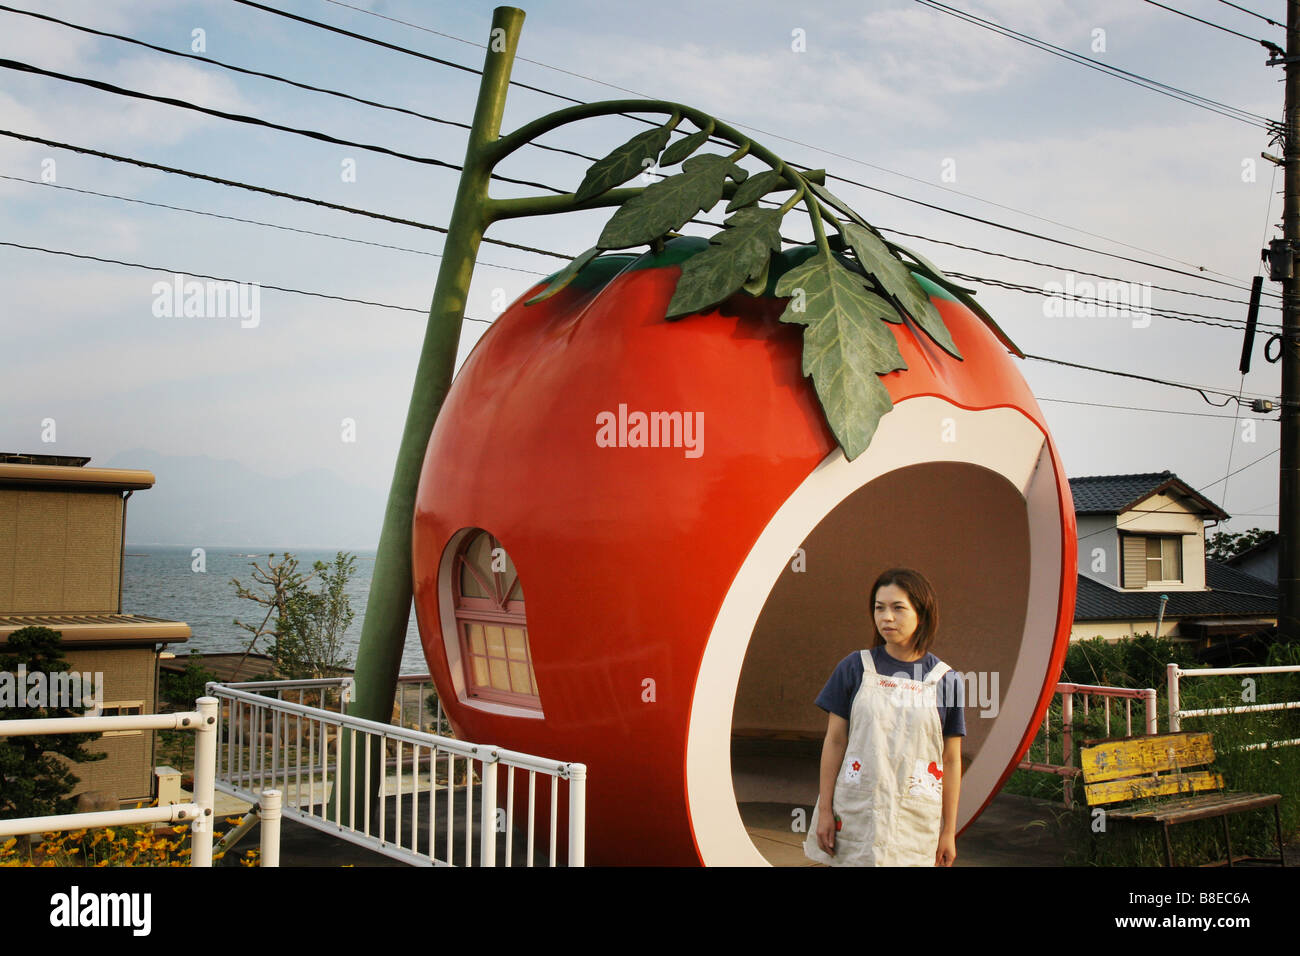 Купить дом в овощах. Остановки в виде фруктов в Японии. Автобусные остановки в форме фруктов Япония. Необычные остановки в Японии. Домик в форме овощей и фруктов.